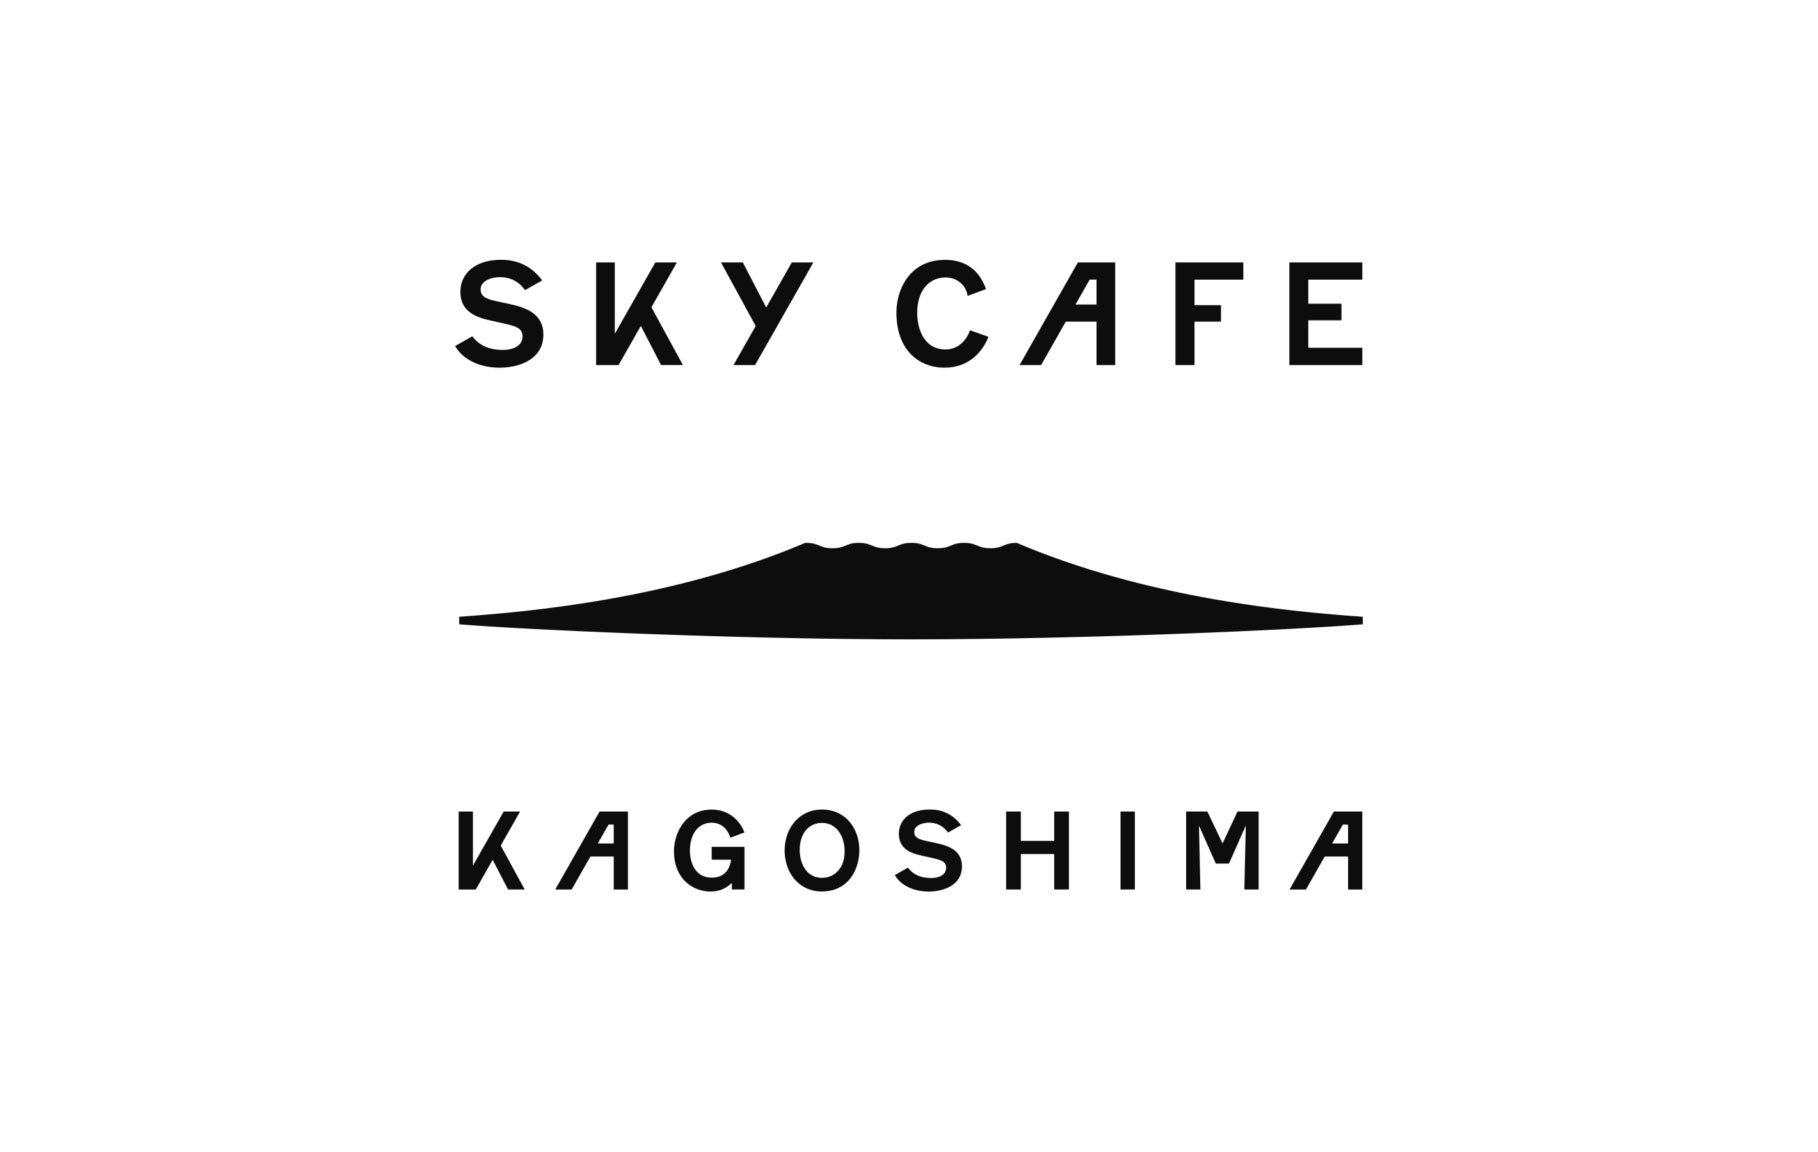 鹿児島空港 SKY CAFE